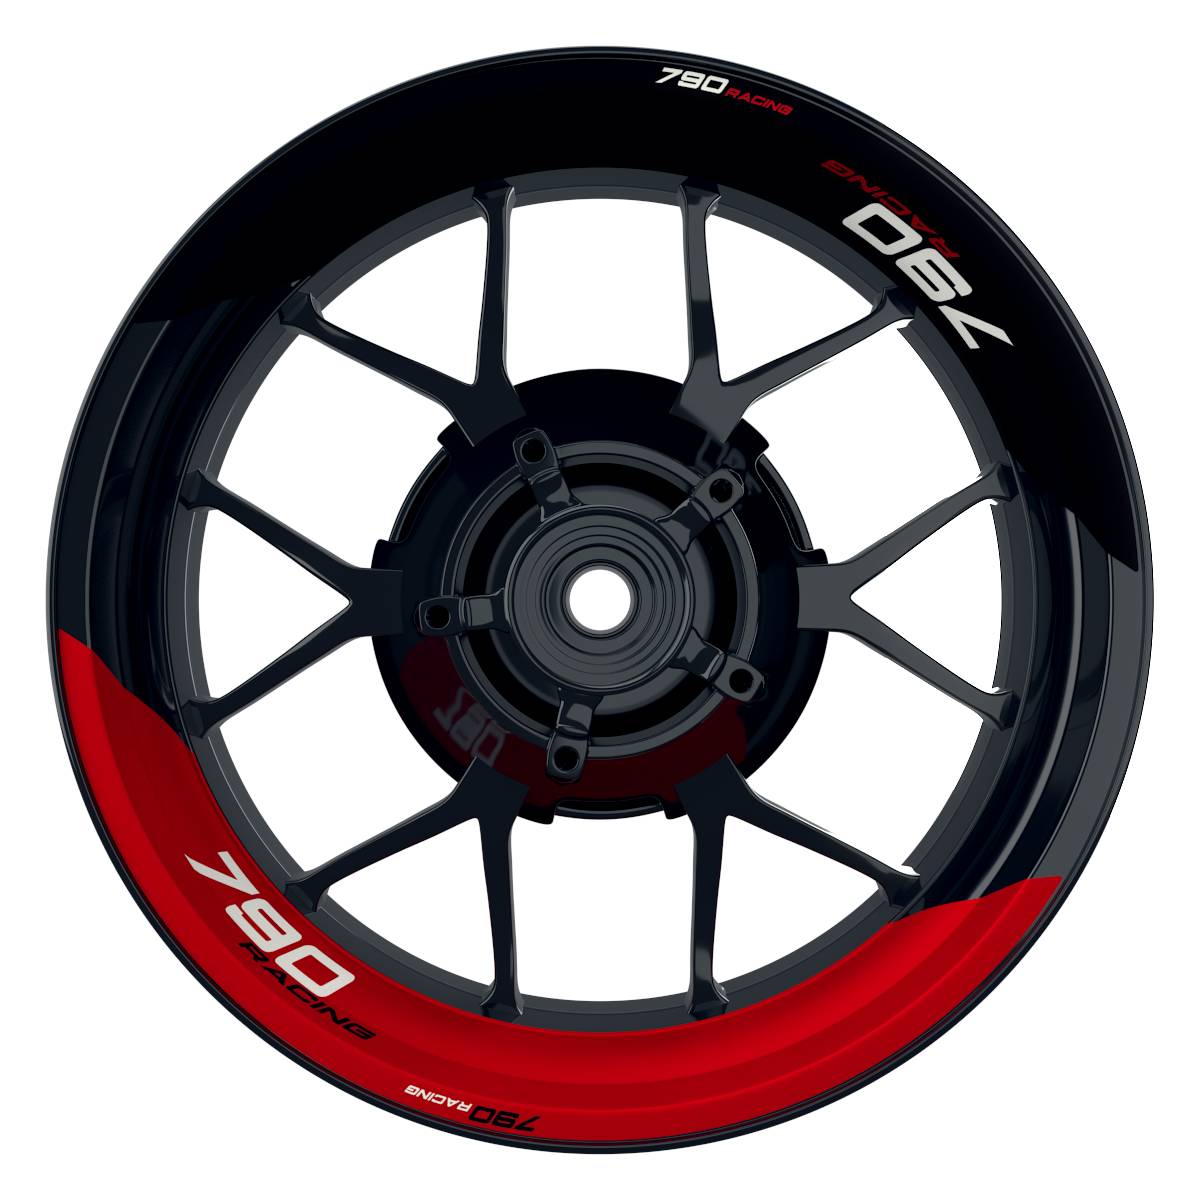 KTM Racing 790 halb halb schwarz rot Frontansicht